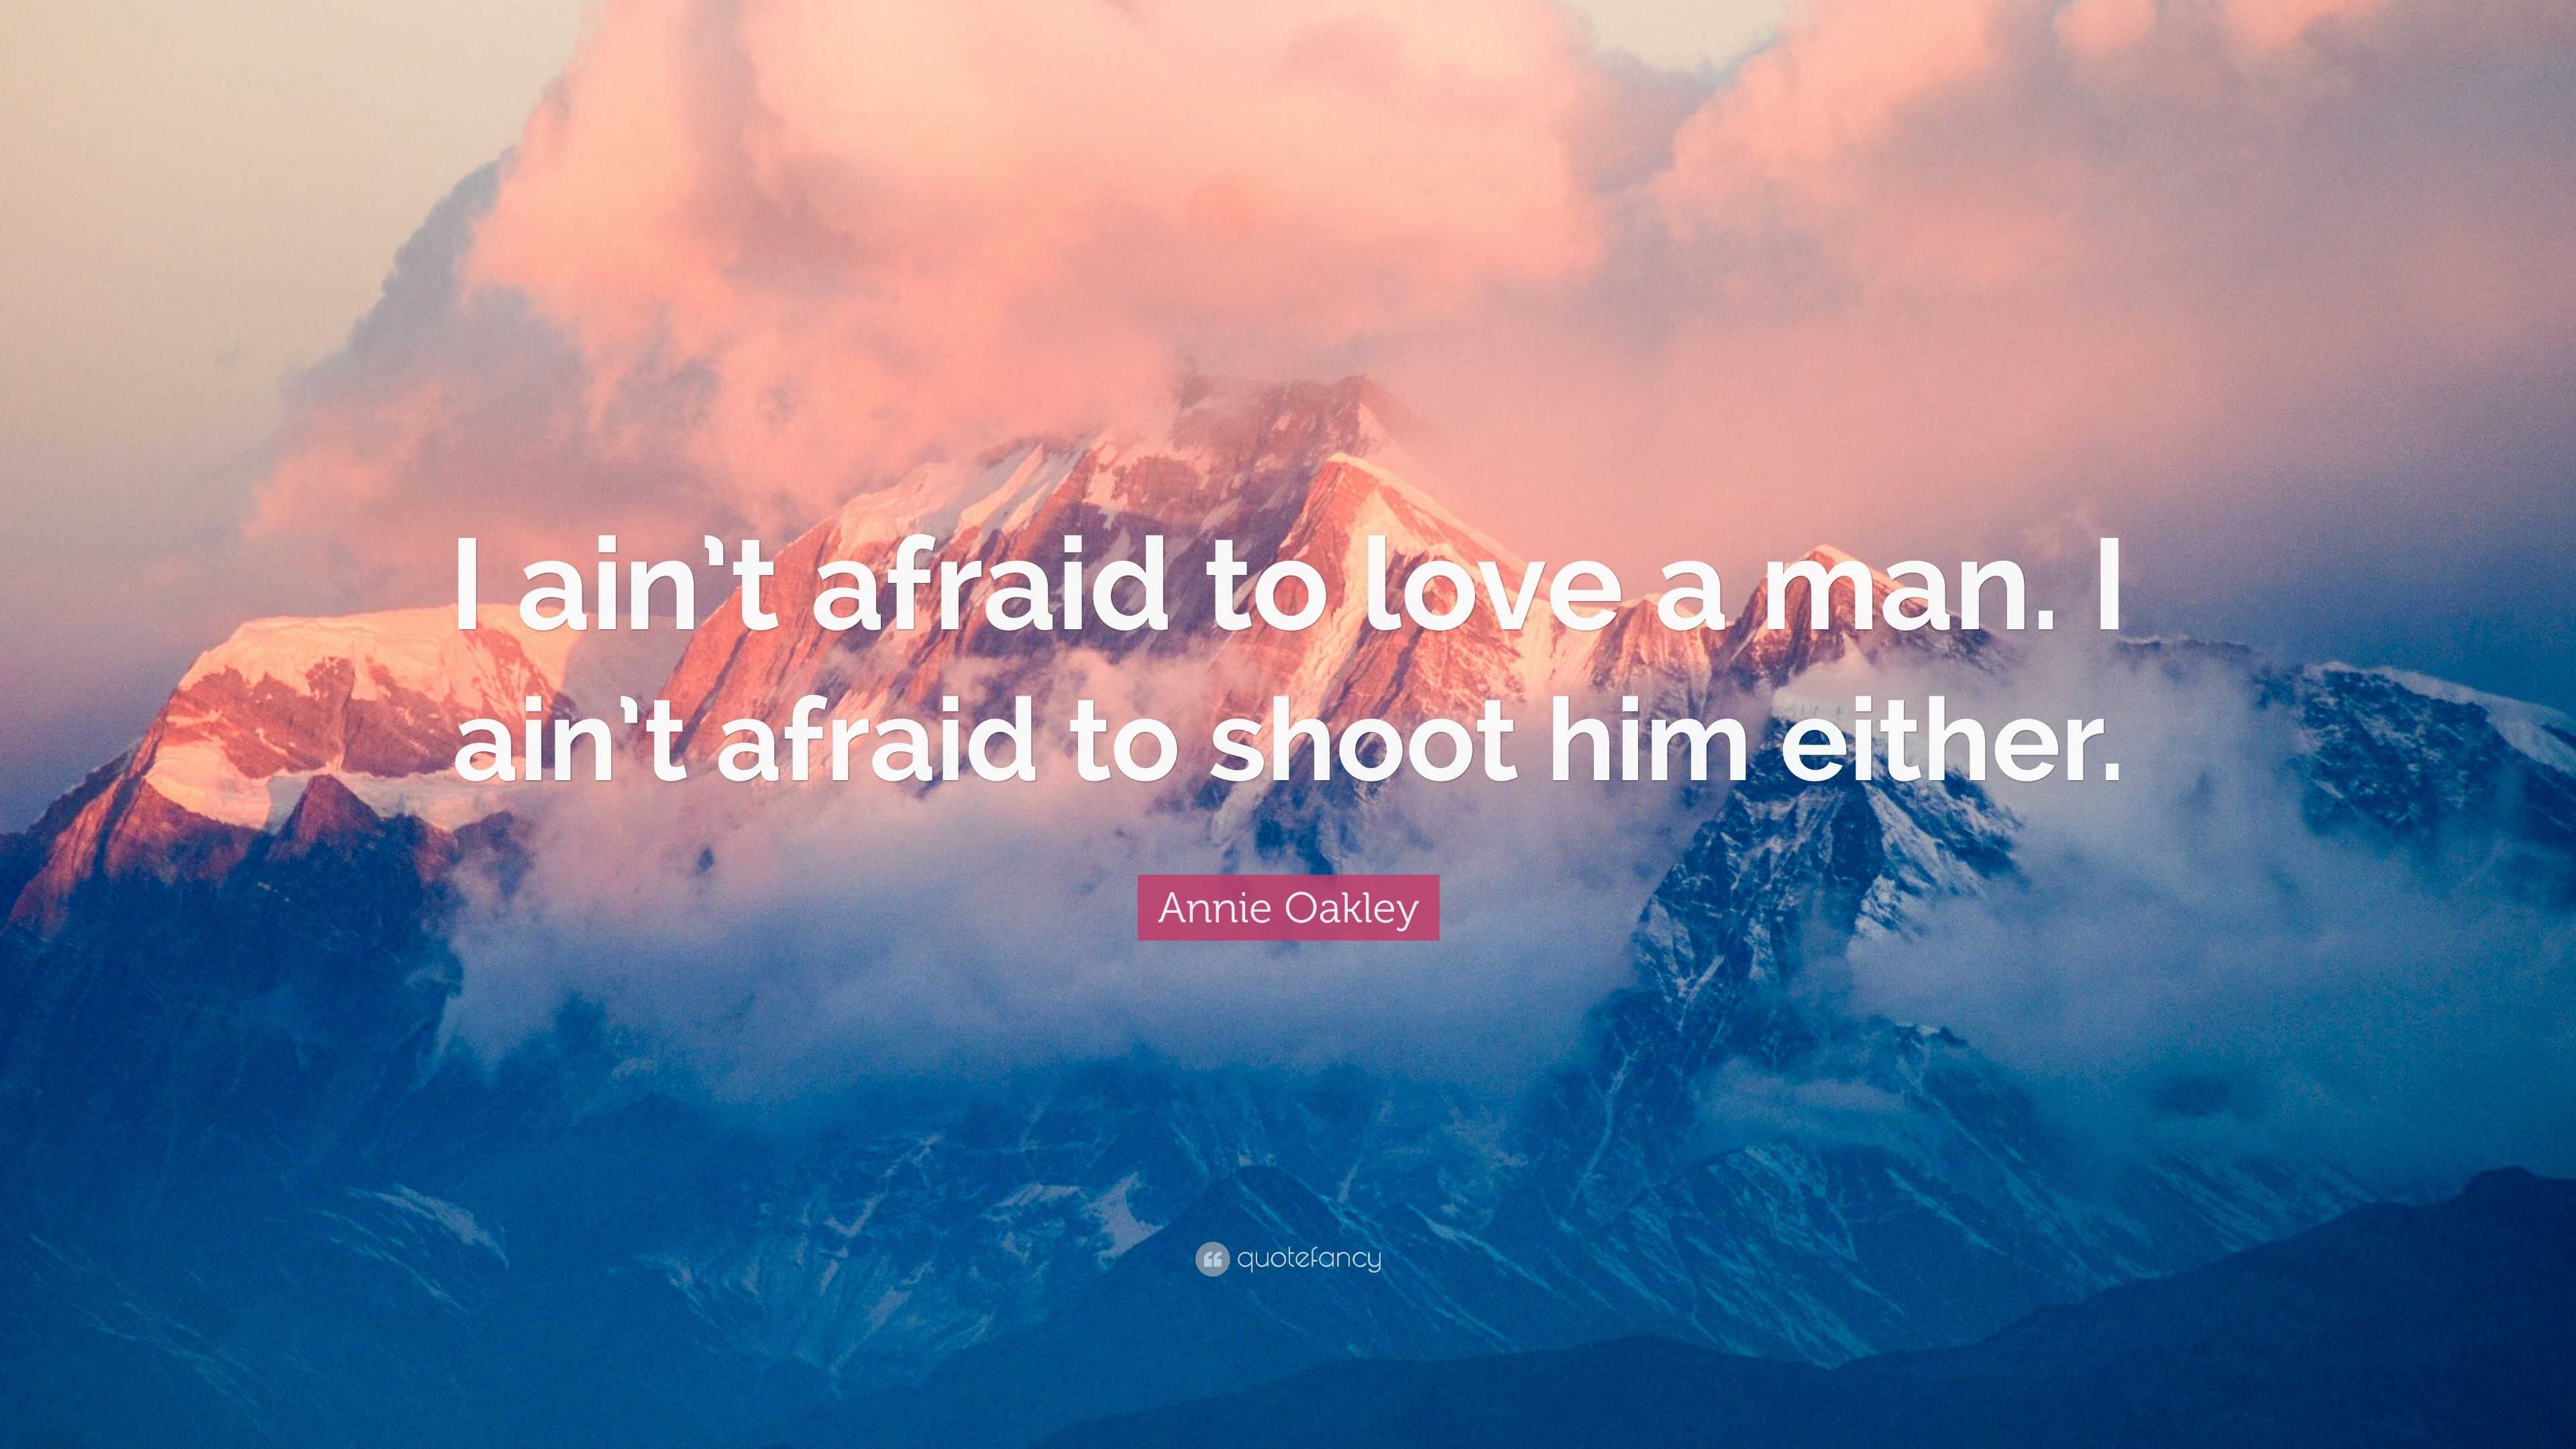 Annie Oakley Quote: “I ain't afraid to love a man. I ain't afraid to